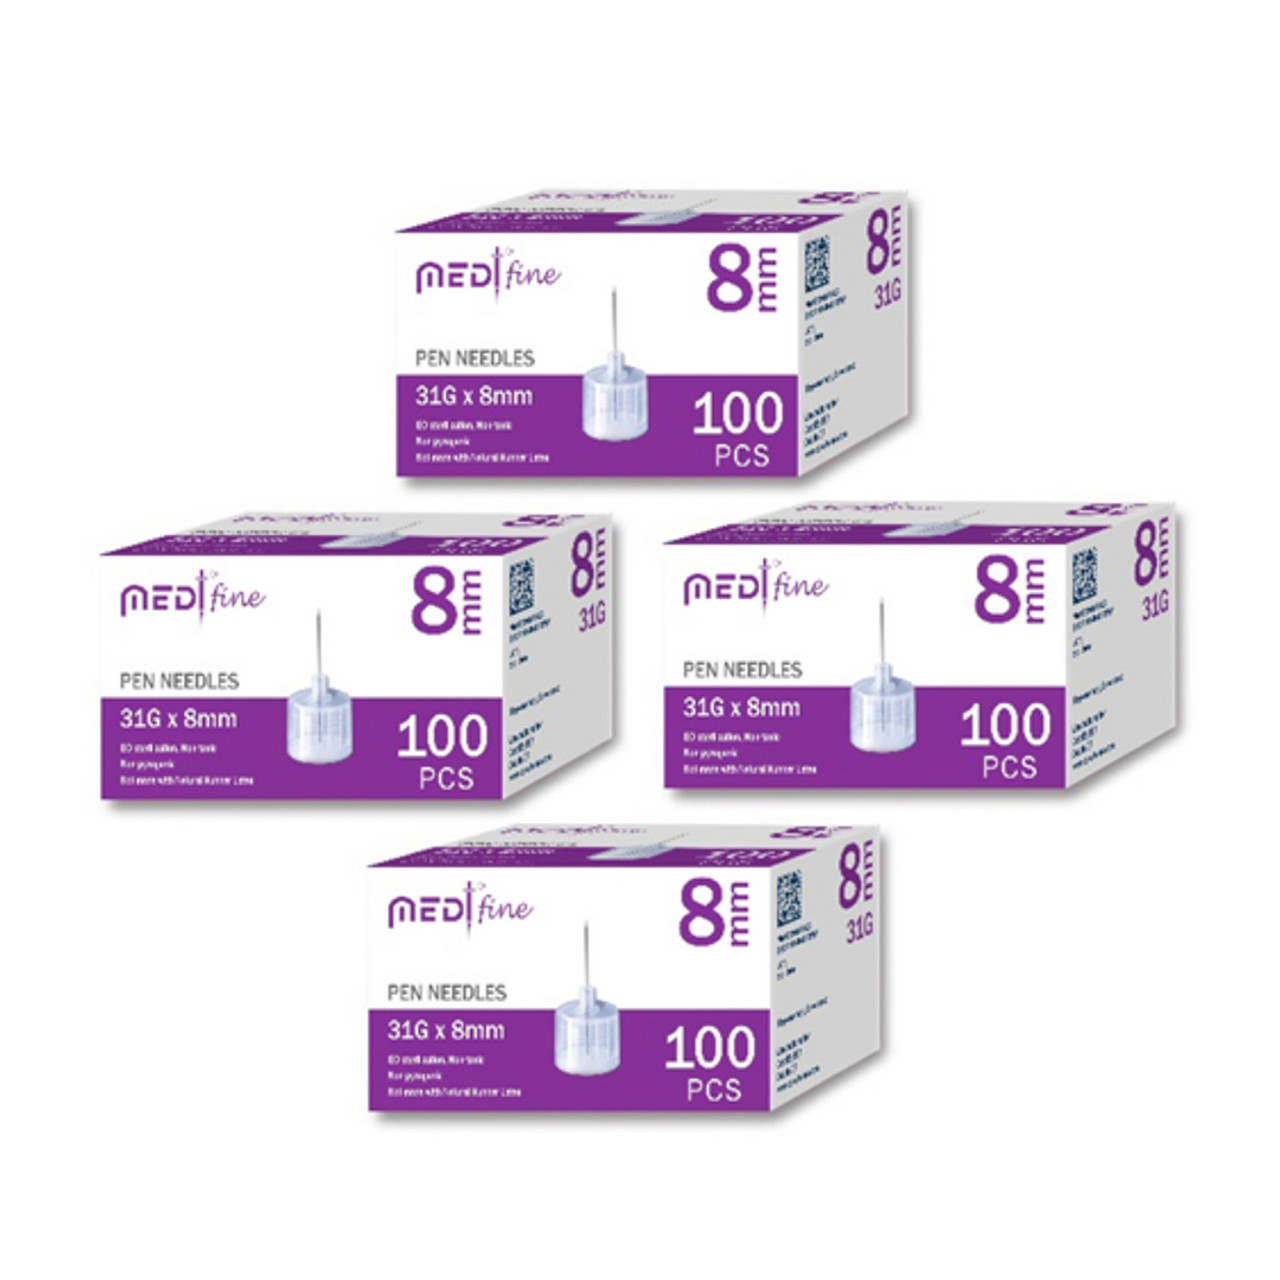 MedtFine Insulin Pen Needles (31G 8mm) 400 pieces